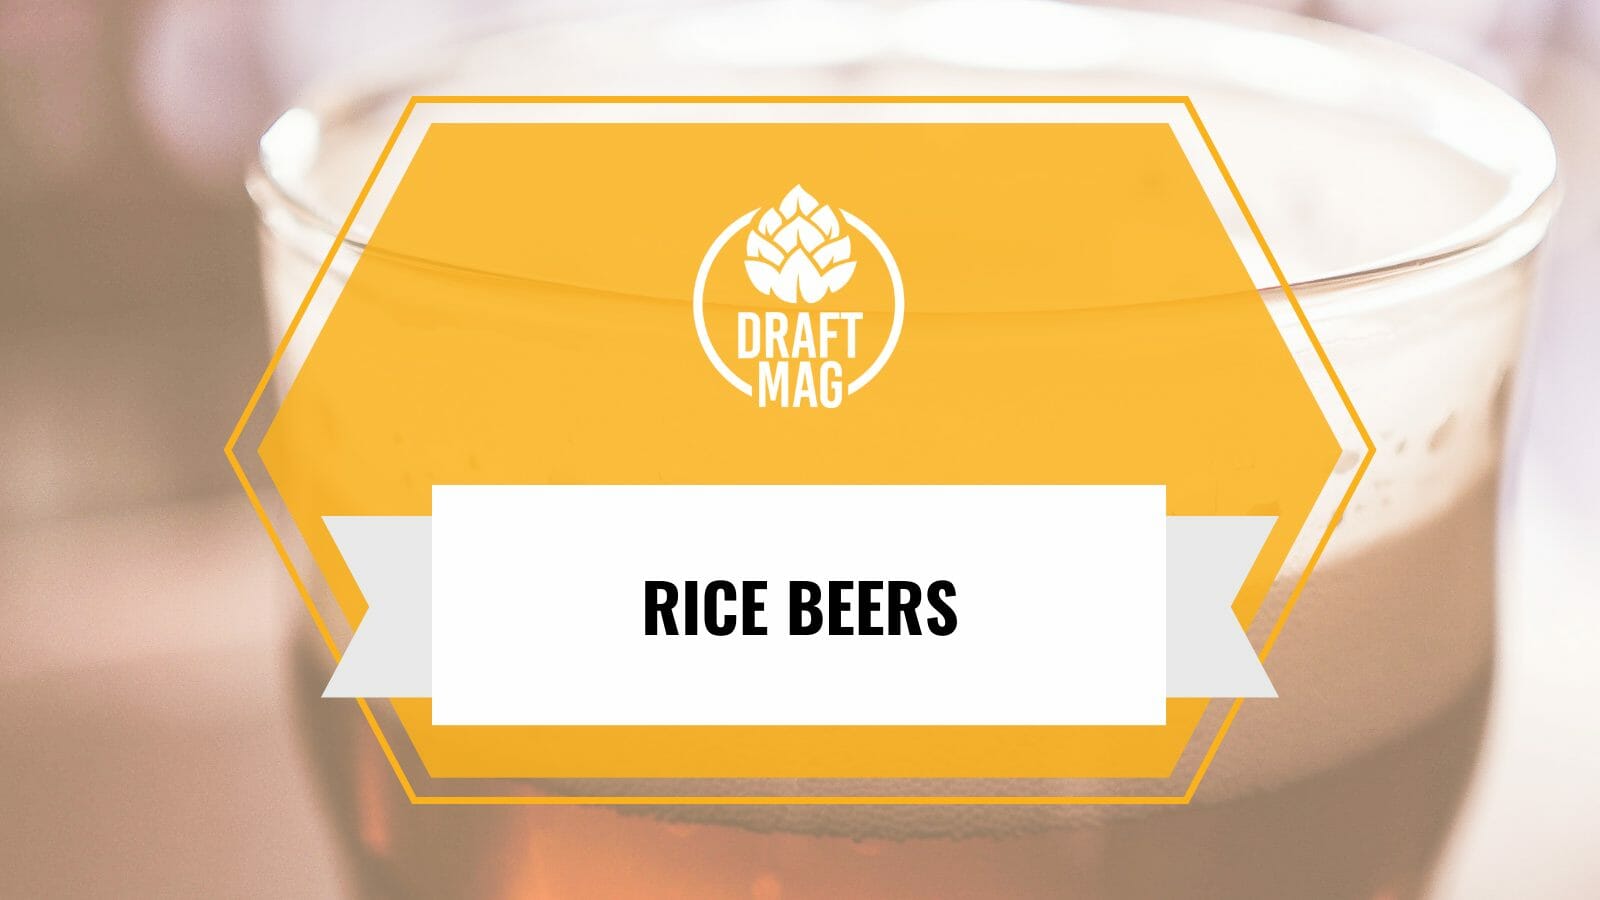 Rice Beer Brands